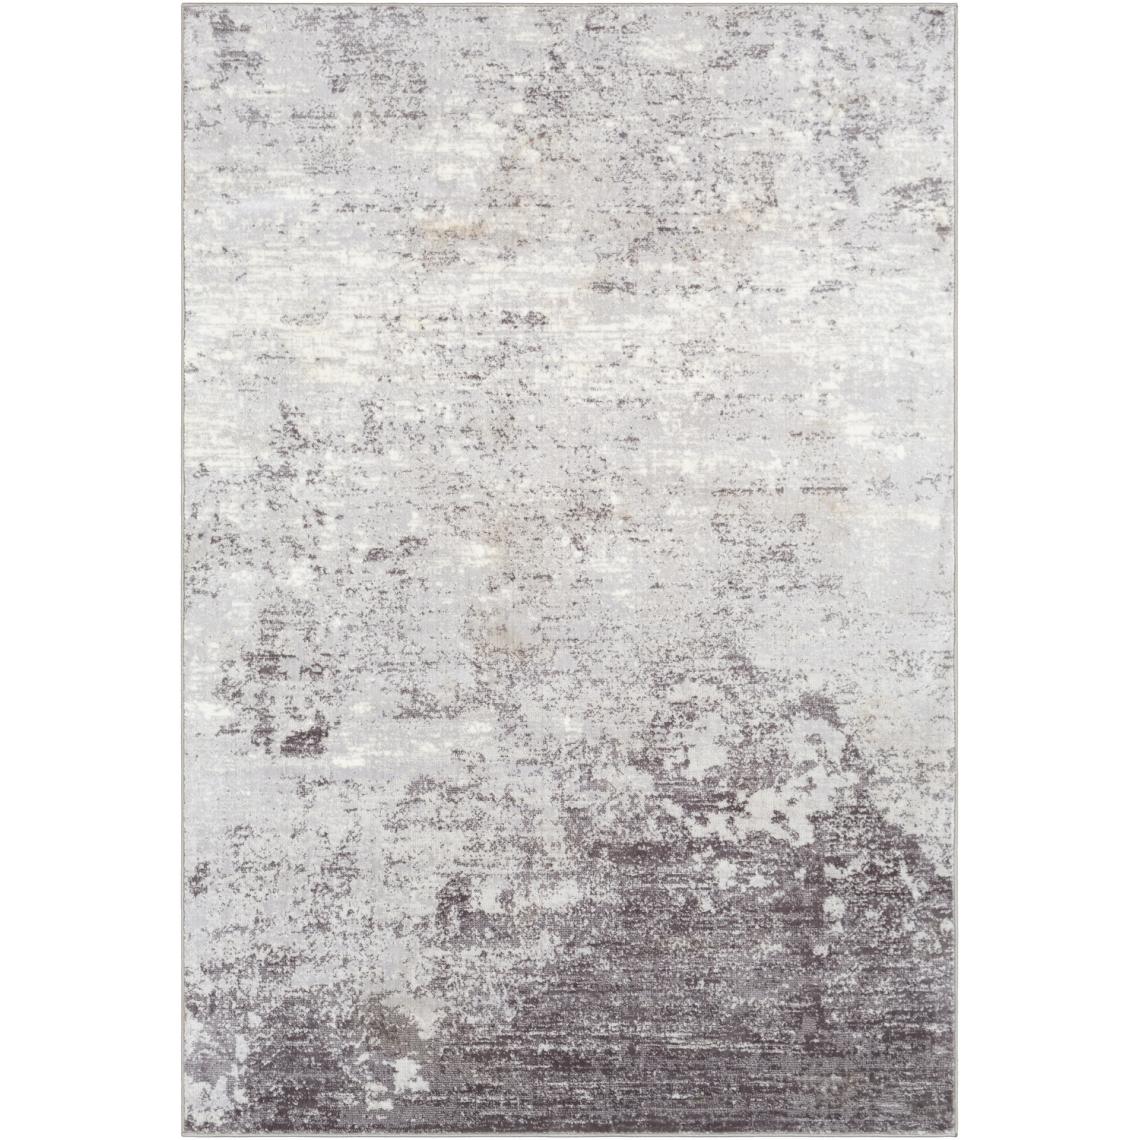 Surya - FIONA - Tapis abstrait, Ardoise, Blanc, Anthracite - 160x220cm - Tapis